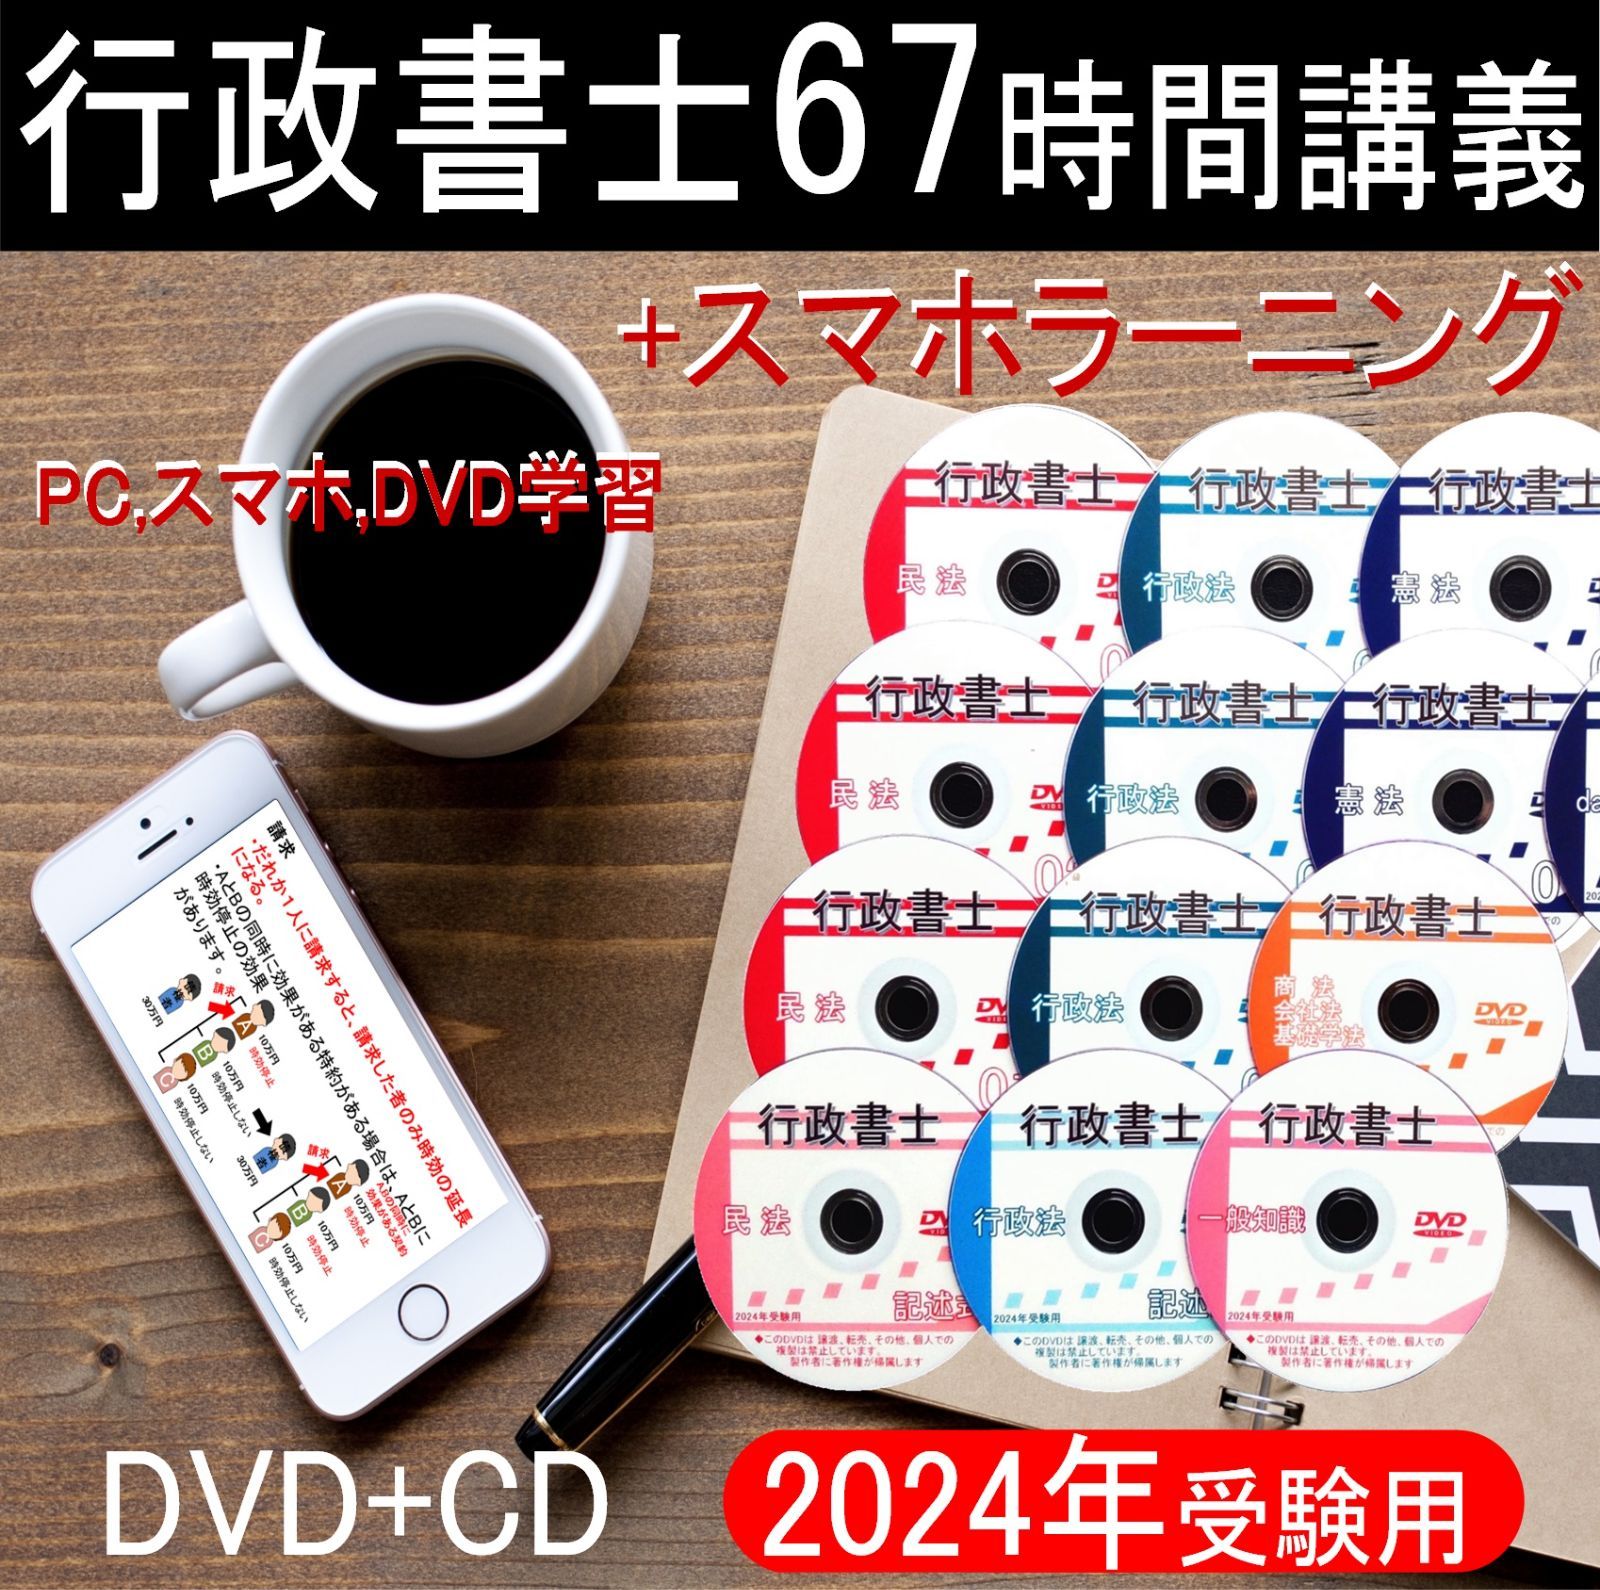 □行政書士 令和6年 2024年 DVD講義+ＣＤ12枚（スマホ・PC学習セット付